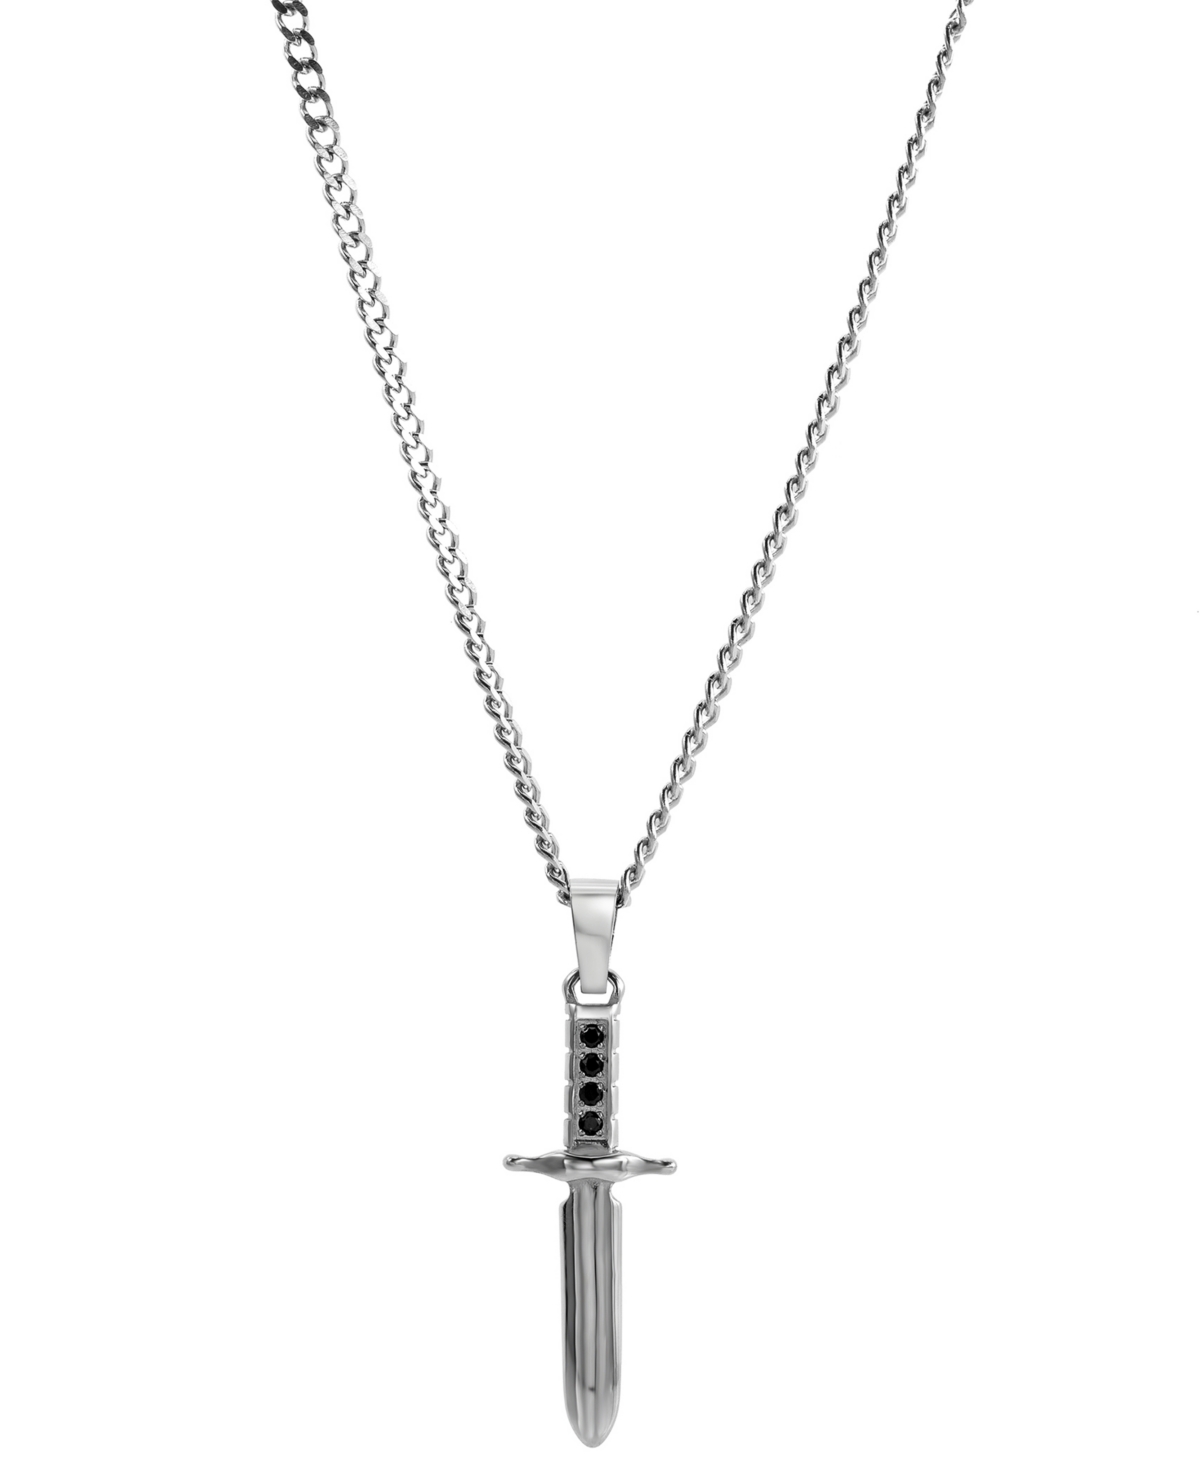 Men's Cubic Zirconia Sword 24" Pendant Necklace in Stainless Steel - Black